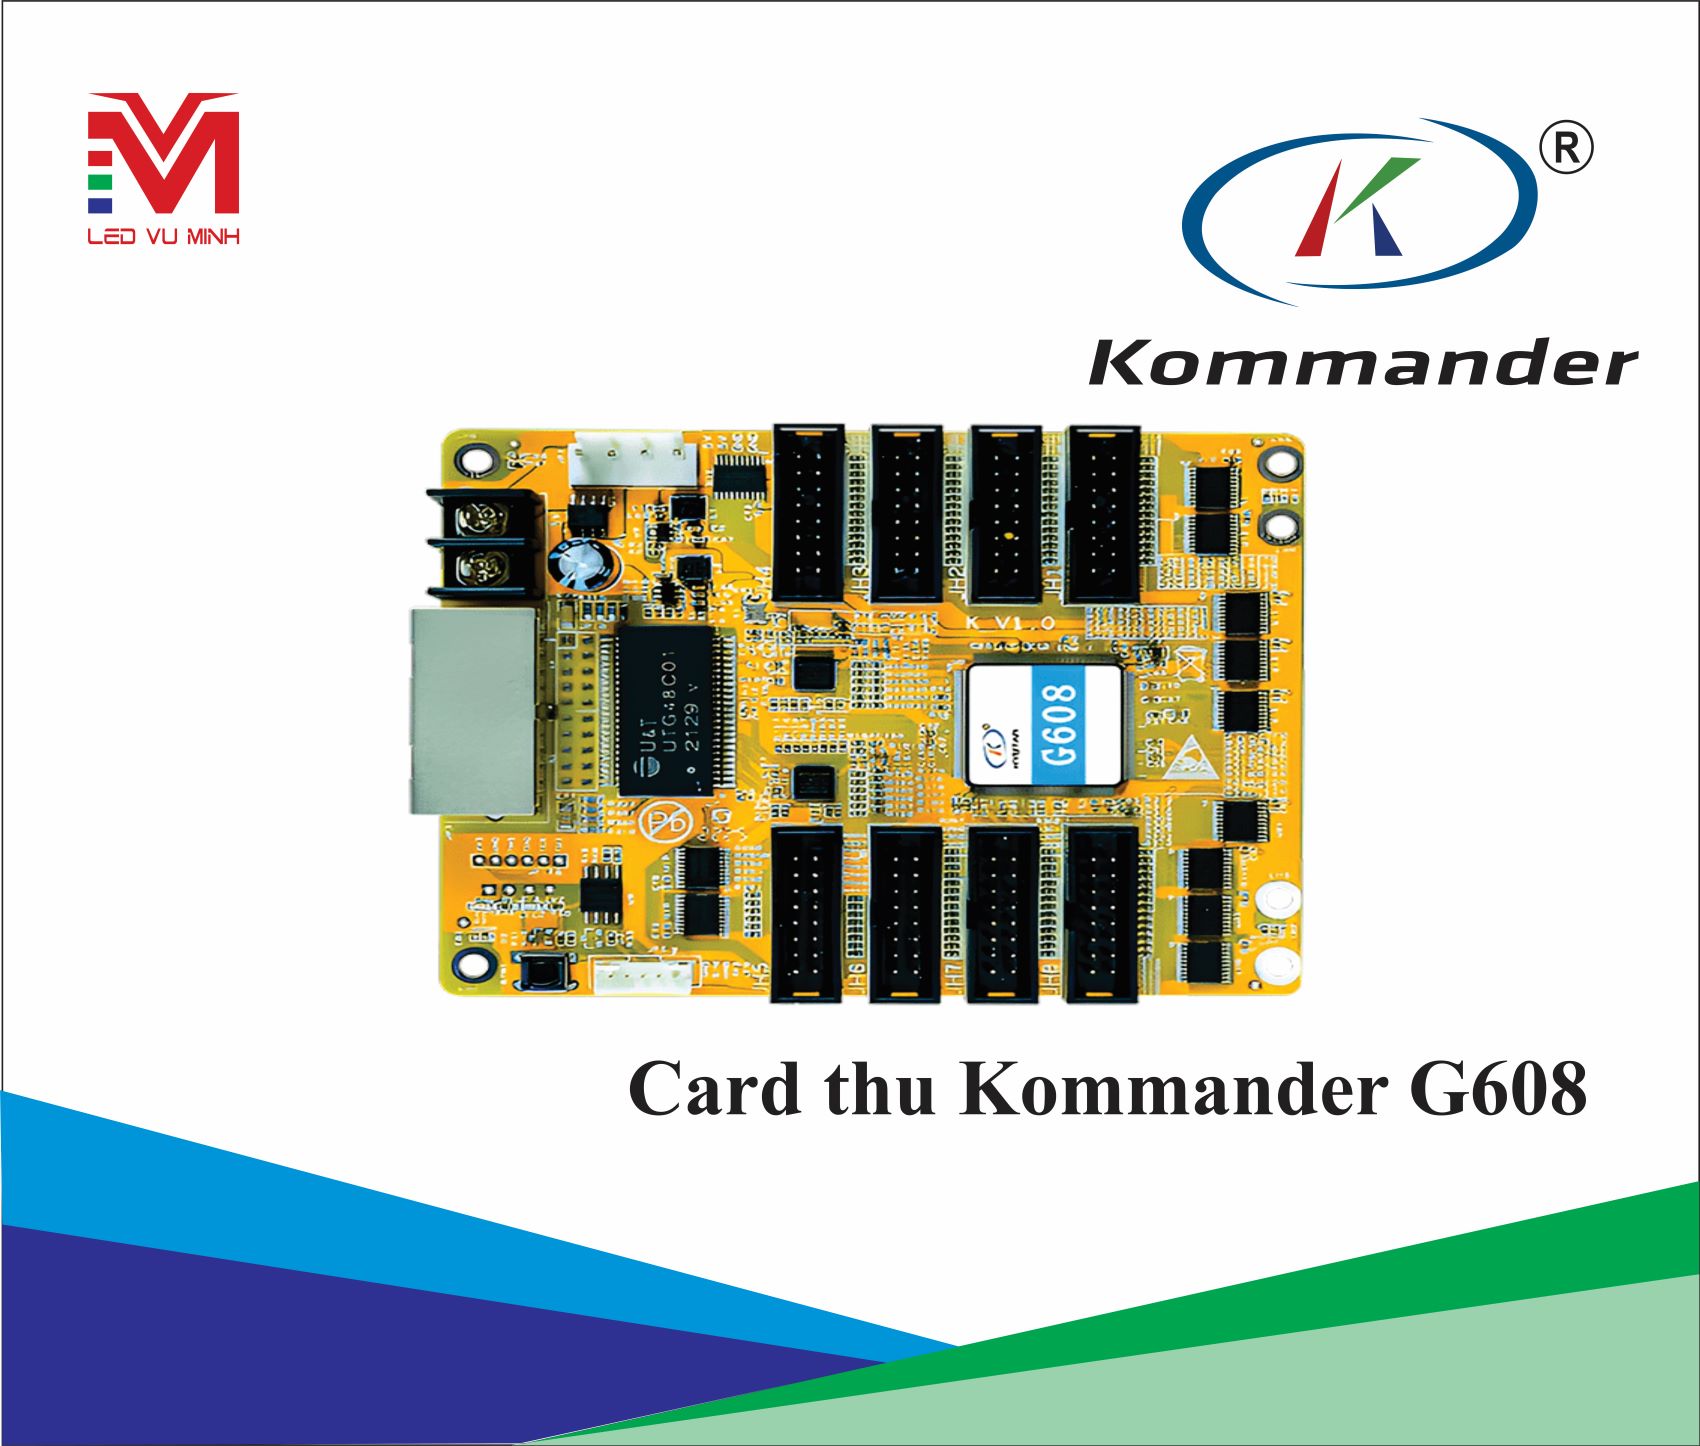 CARD THU KOMMANDER - G608